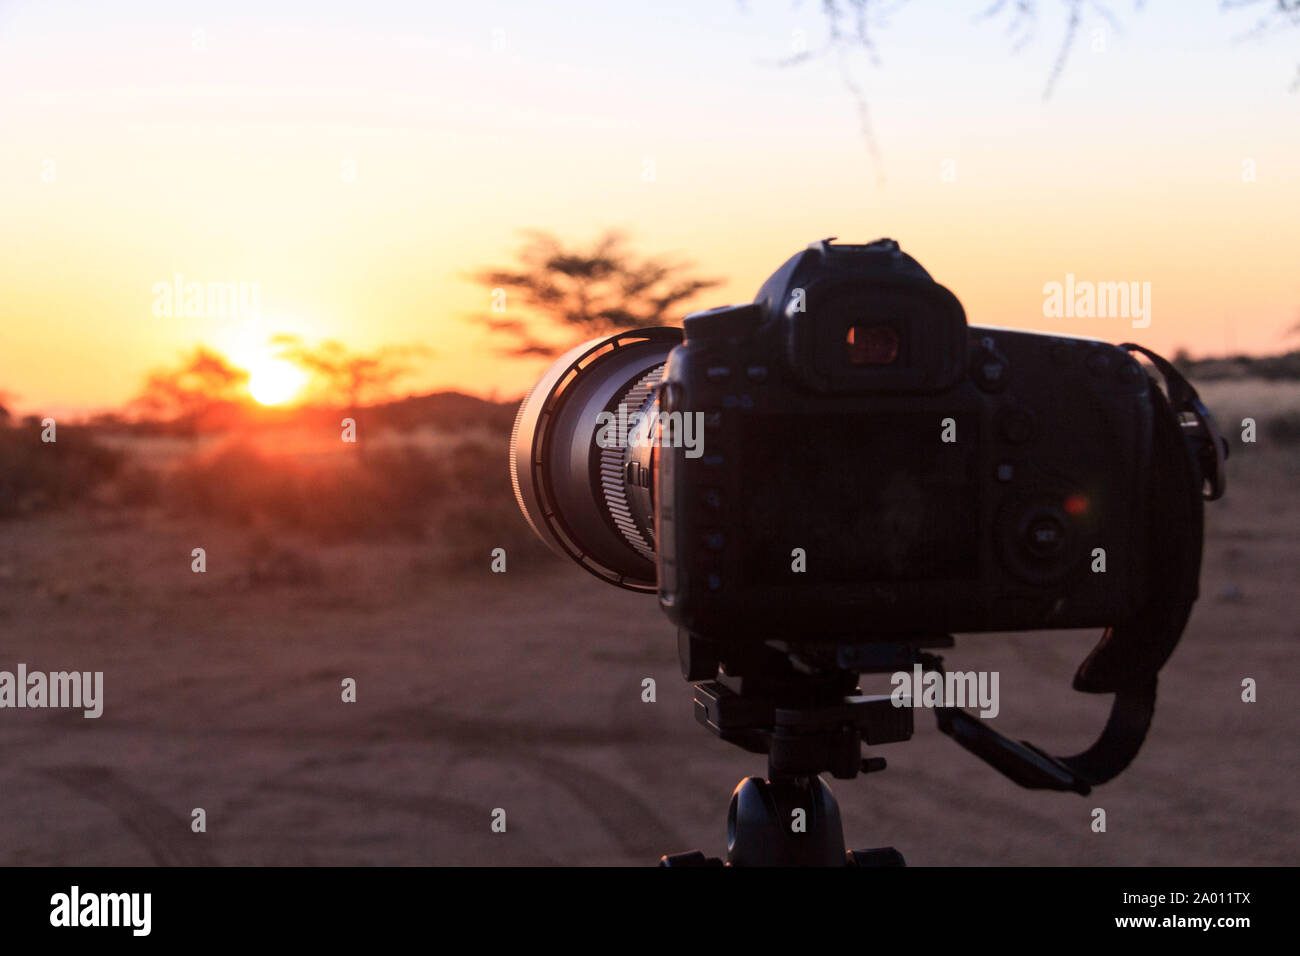 La fotocamera sul cavalletto, la luce del tramonto, Namibia Foto Stock